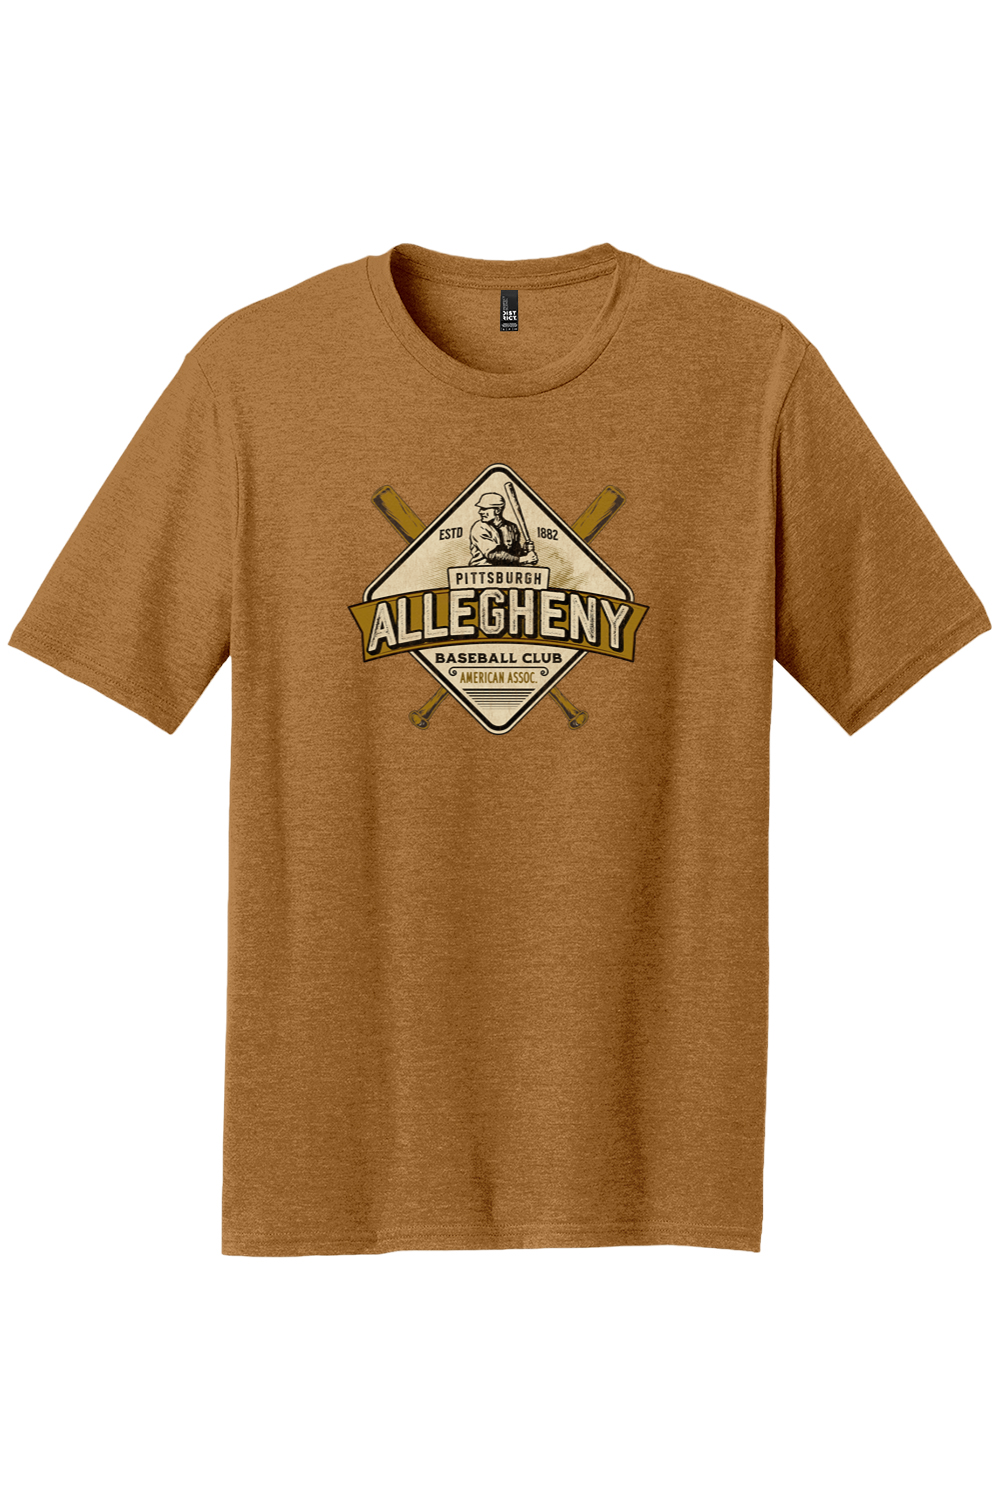 Pittsburgh Allegheny Baseball Club - 1882 - Yinzylvania